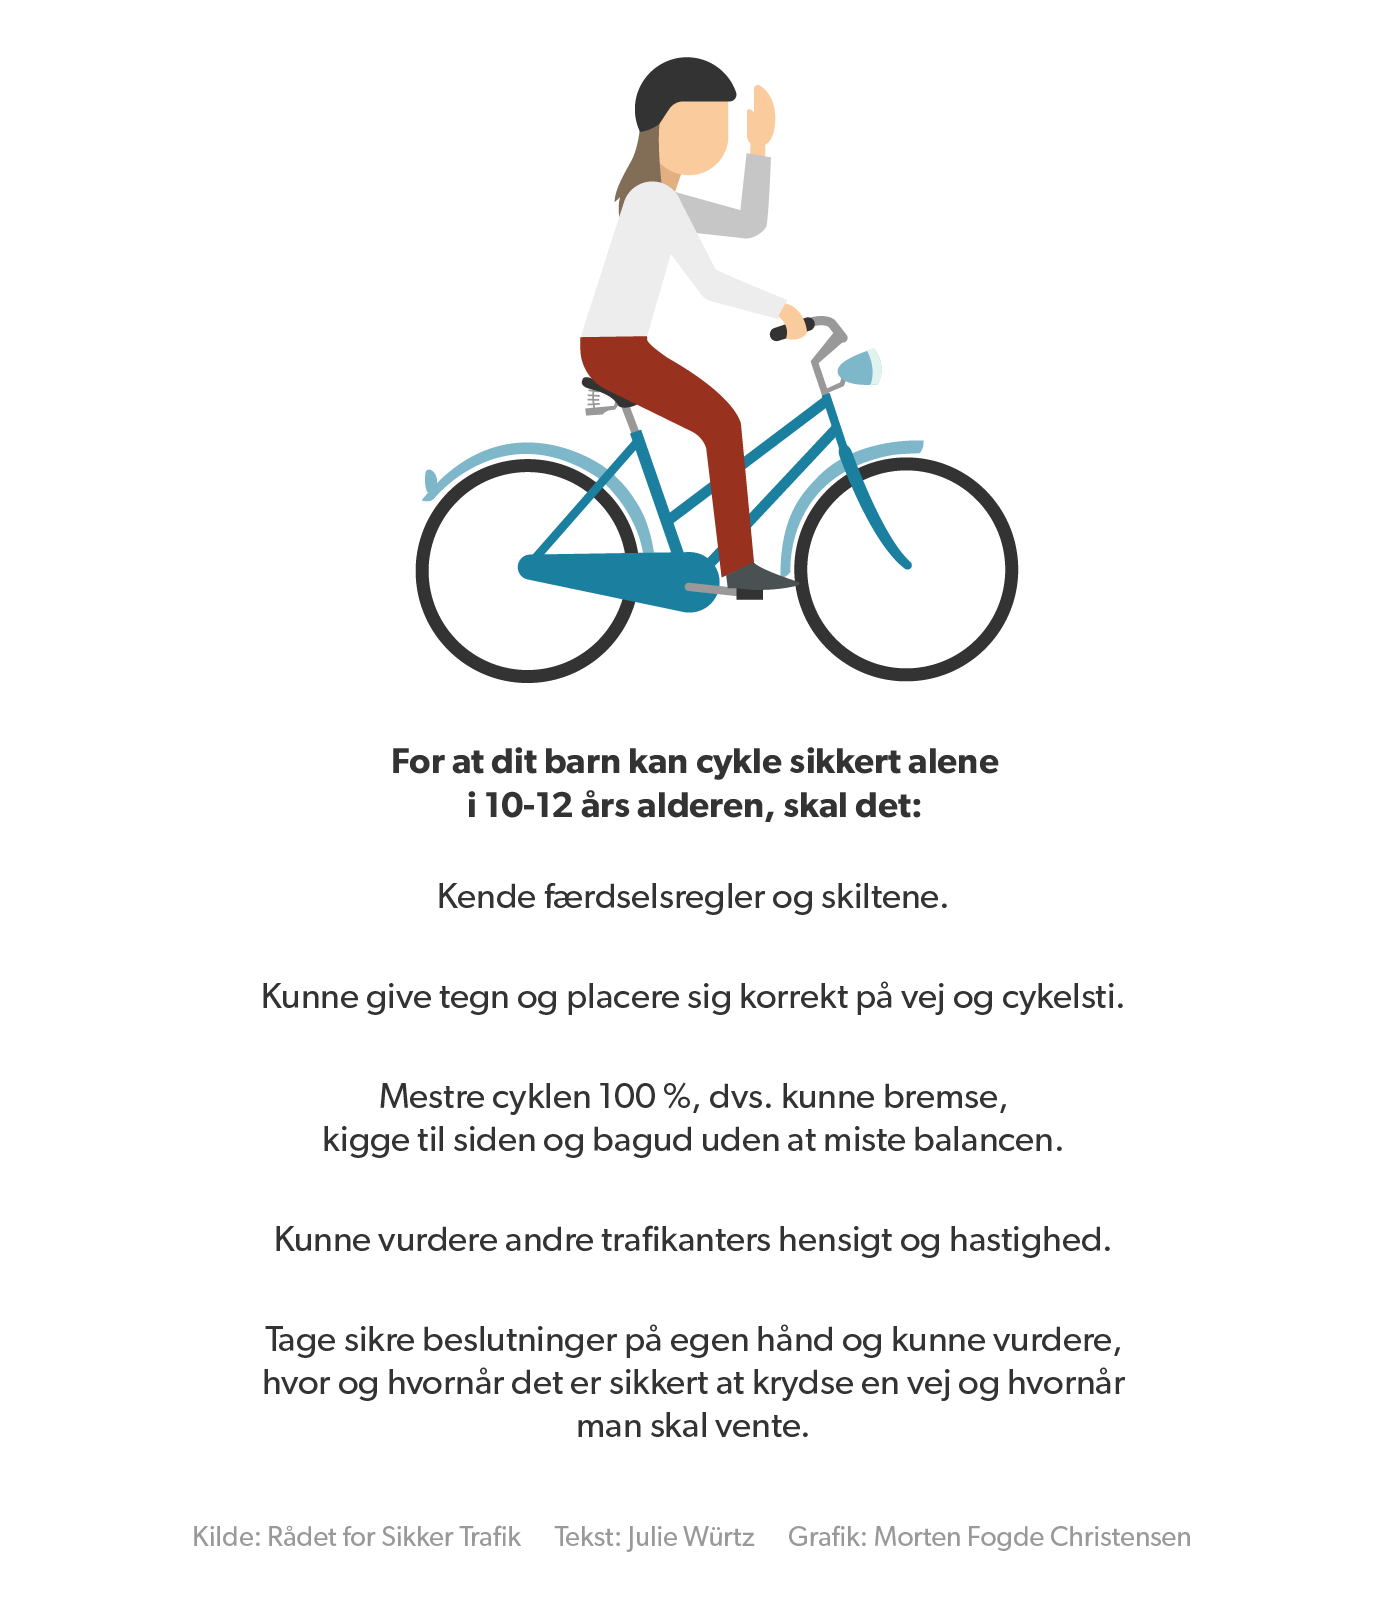 Rådet Sikker Børn skal tage cyklen i skole som 10-12-årige | Sjælland | DR